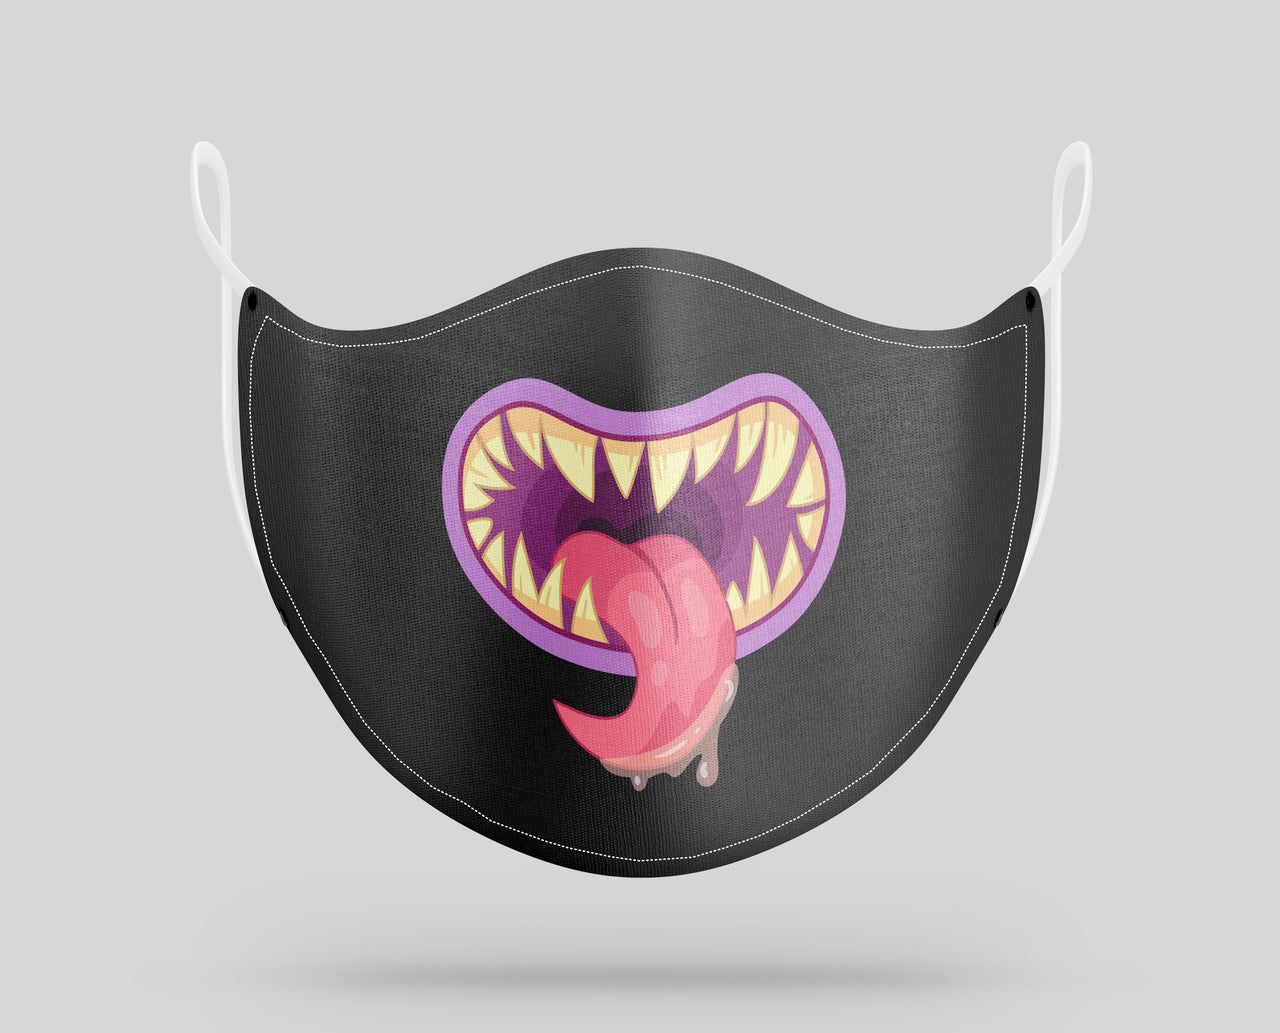 Monster Mouth "6" Designed Face Masks